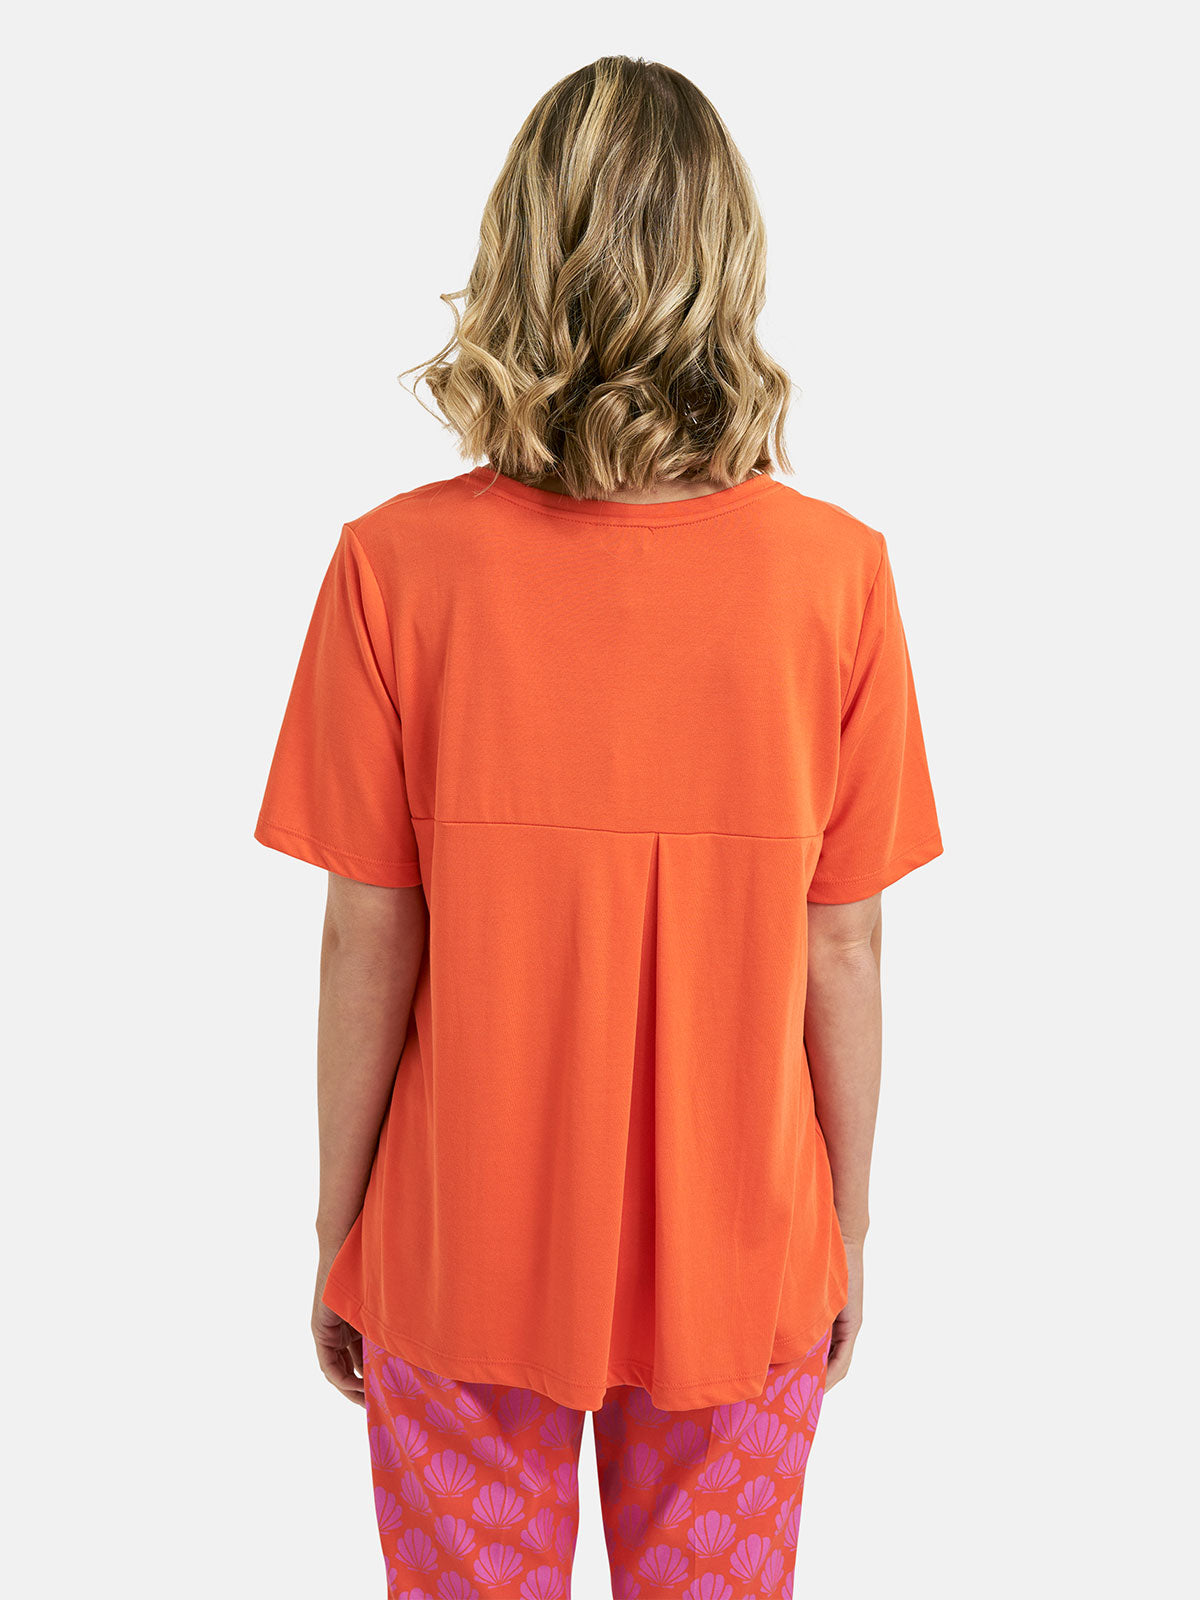 V-Neck Tshirt in Hot Orange